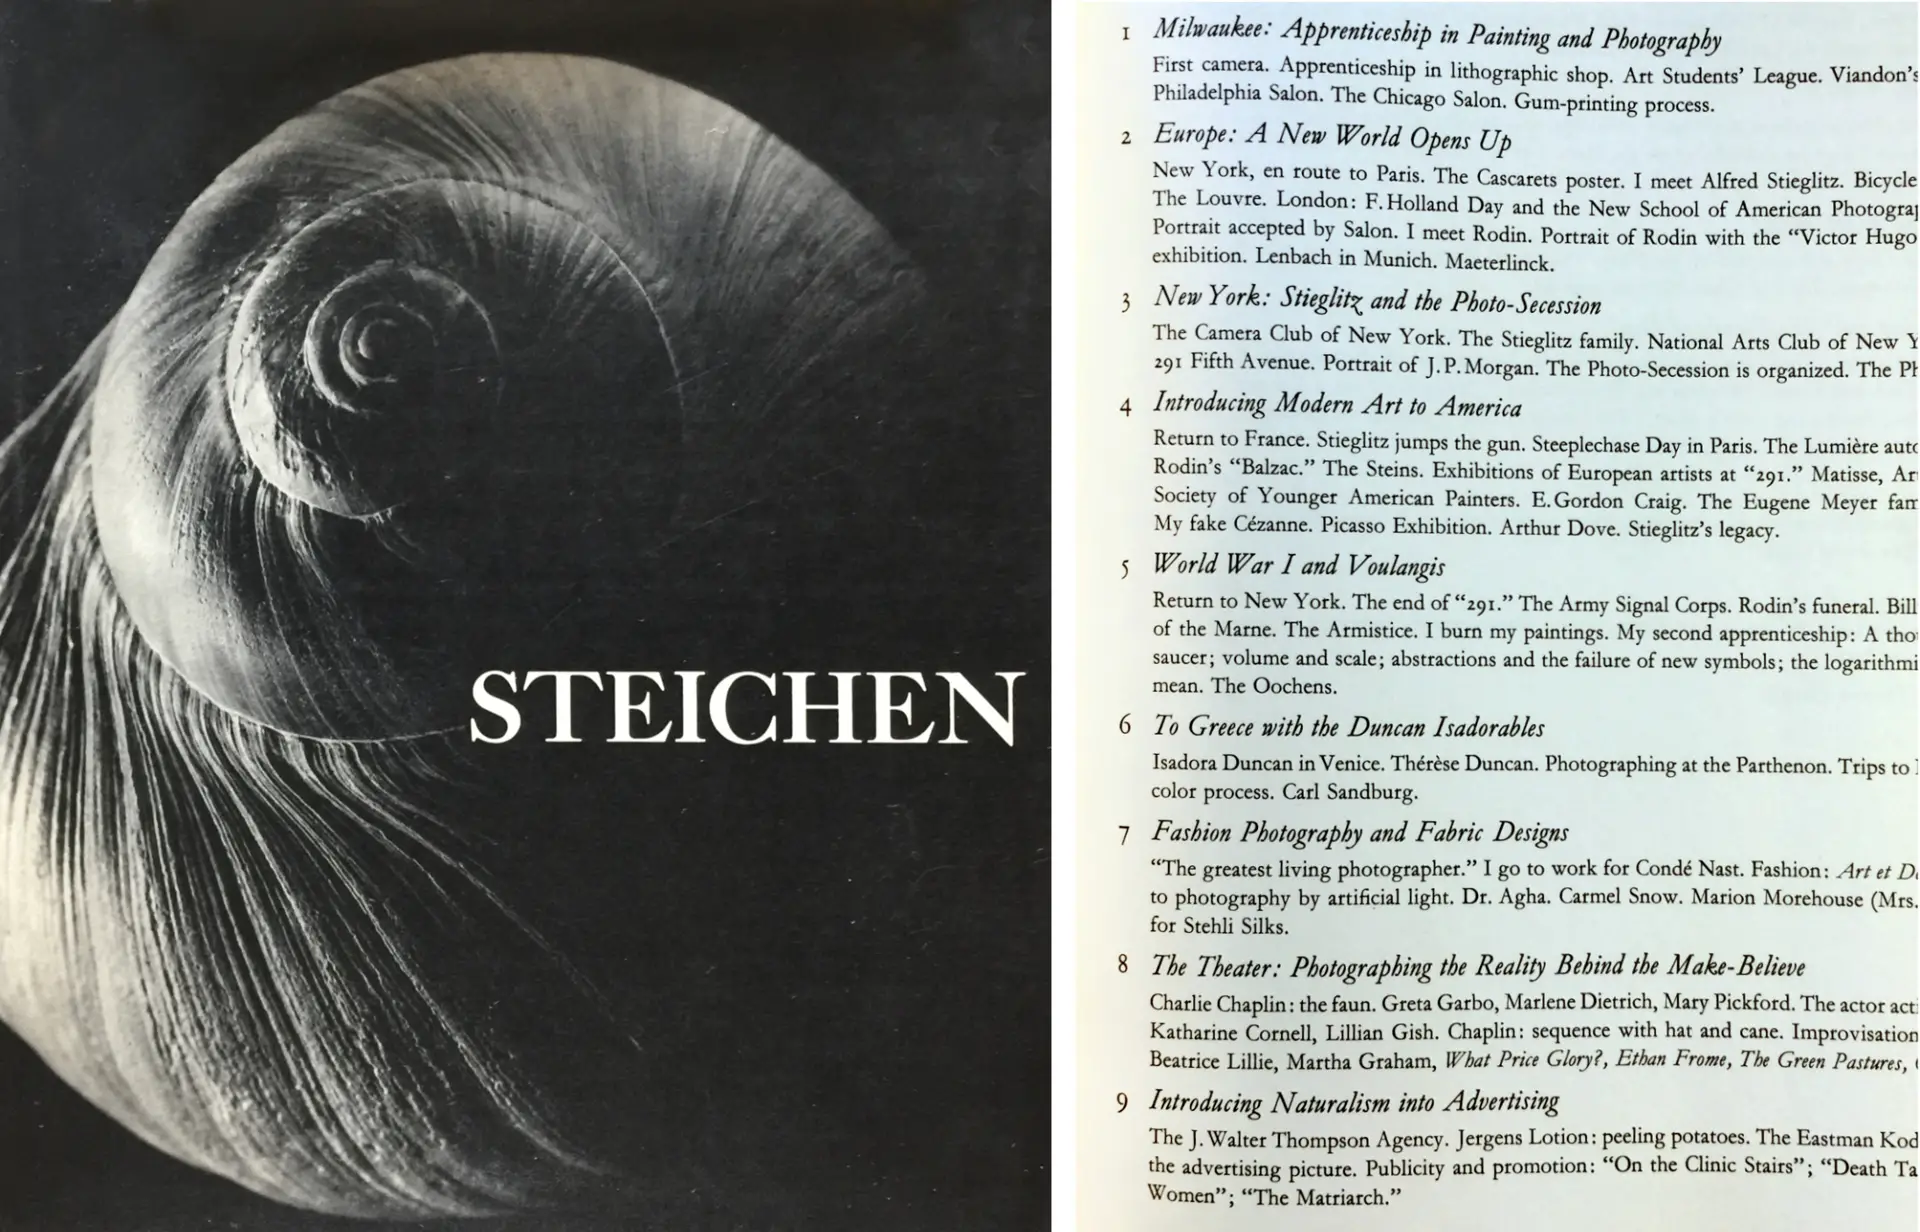 Edward Steichen autobiography